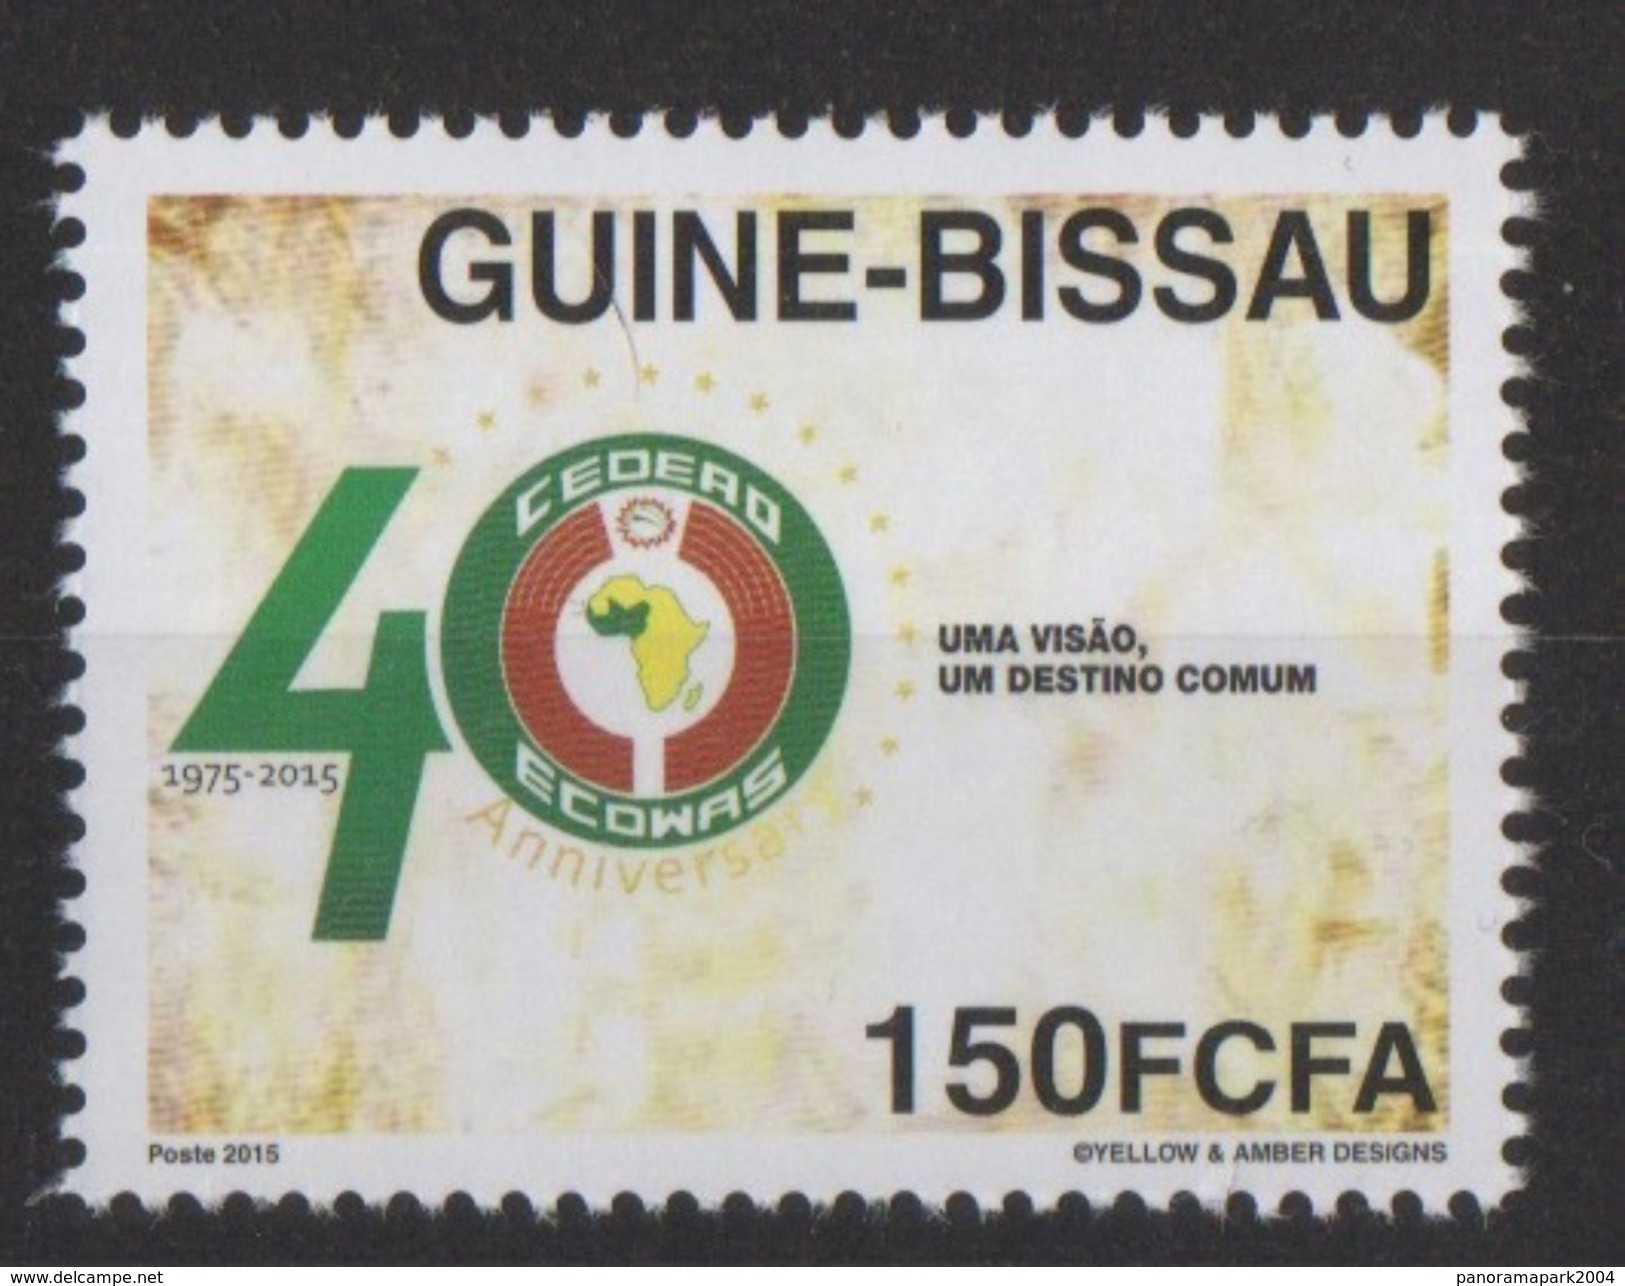 Guiné Bissau Guinea Guinée 2015 Emission Commune Joint Issue CEDEAO ECOWAS 40 Ans 40 Years - Gemeinschaftsausgaben